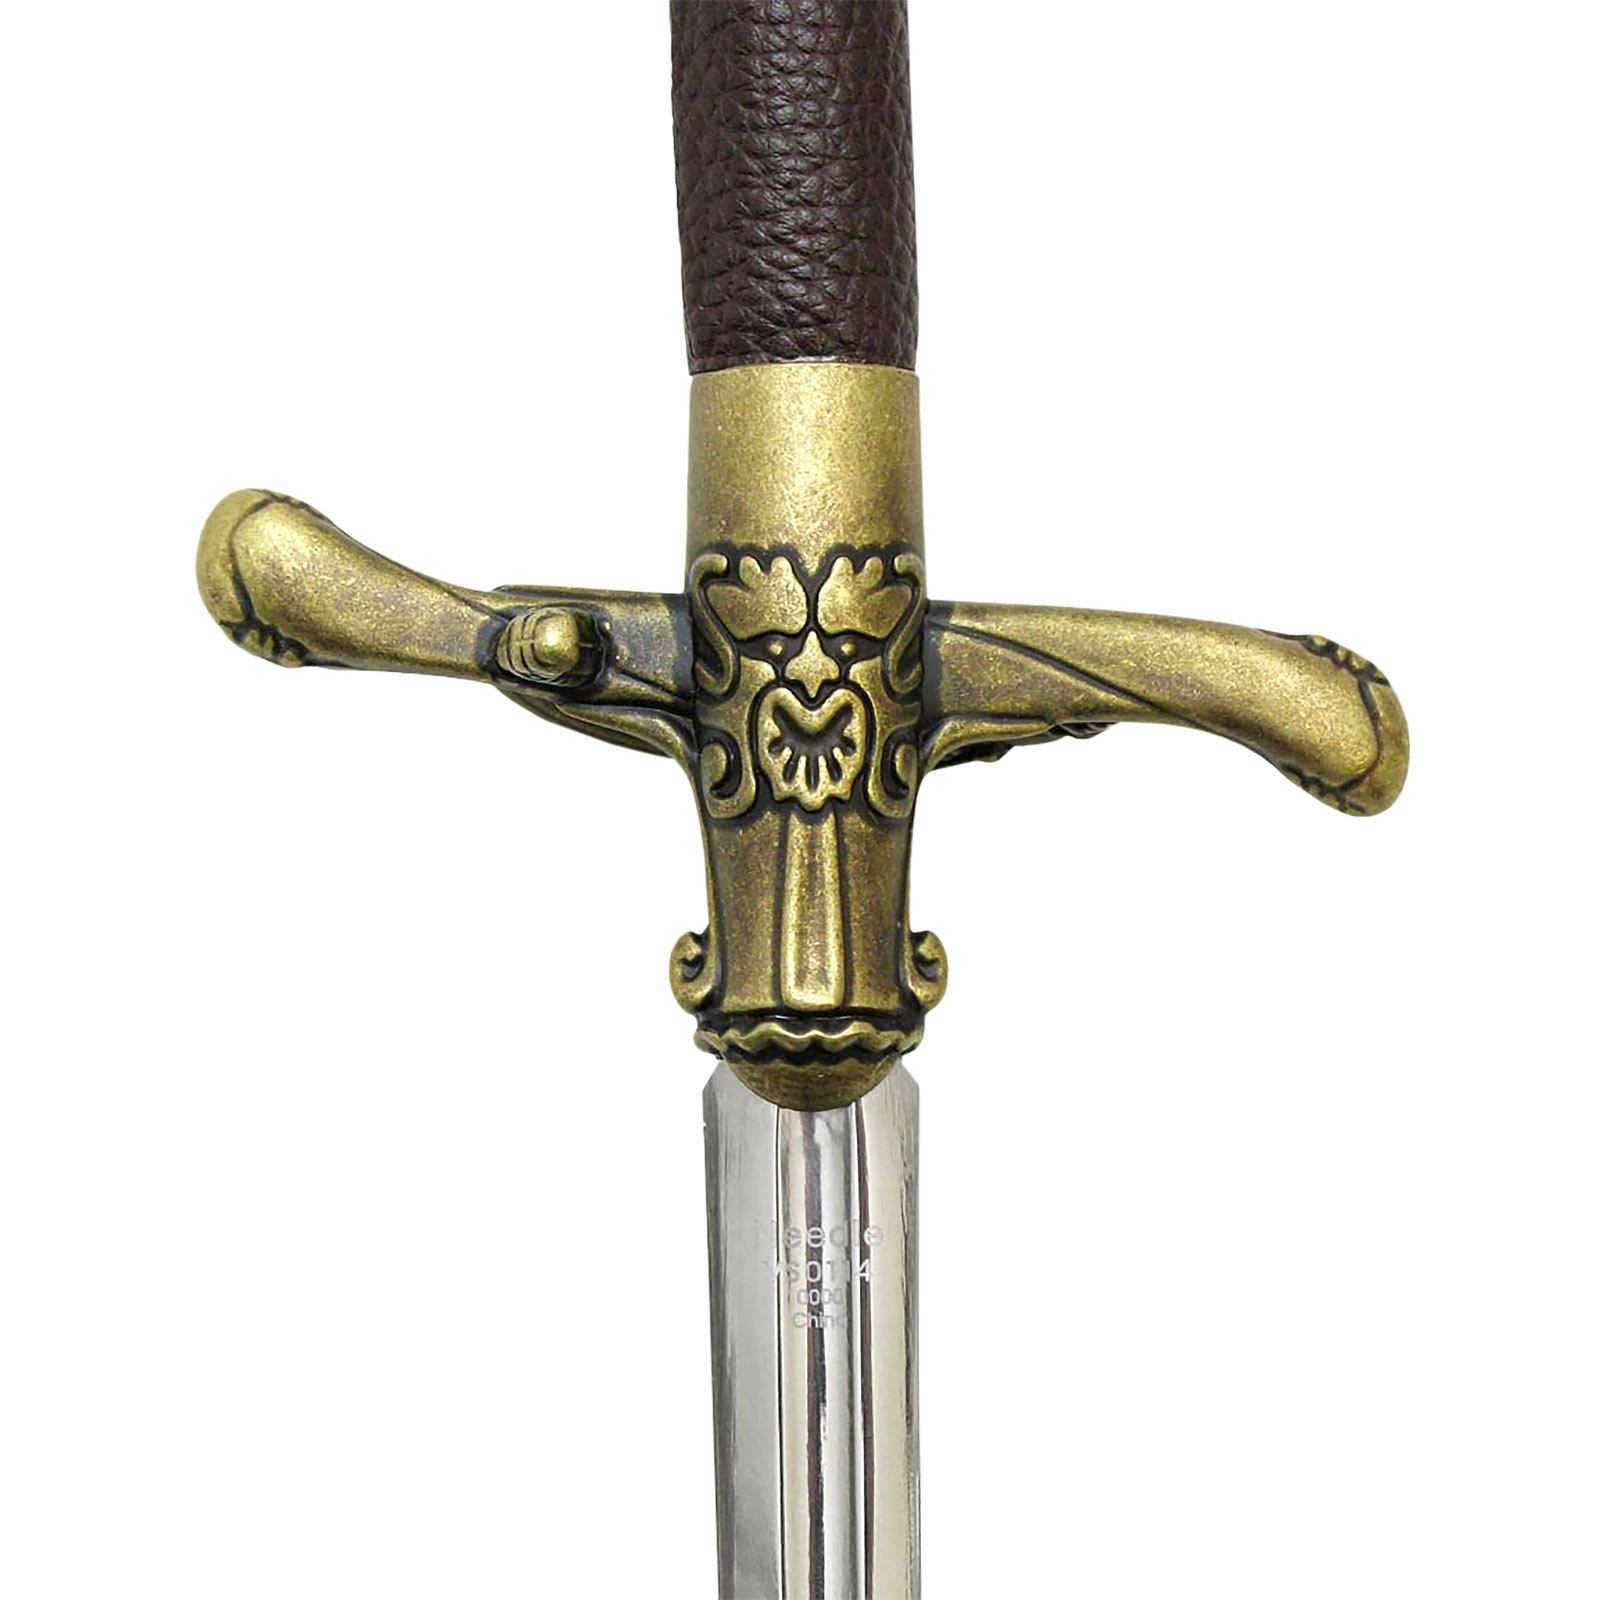 Game of Thrones - Arya Stark's zwaard Needle